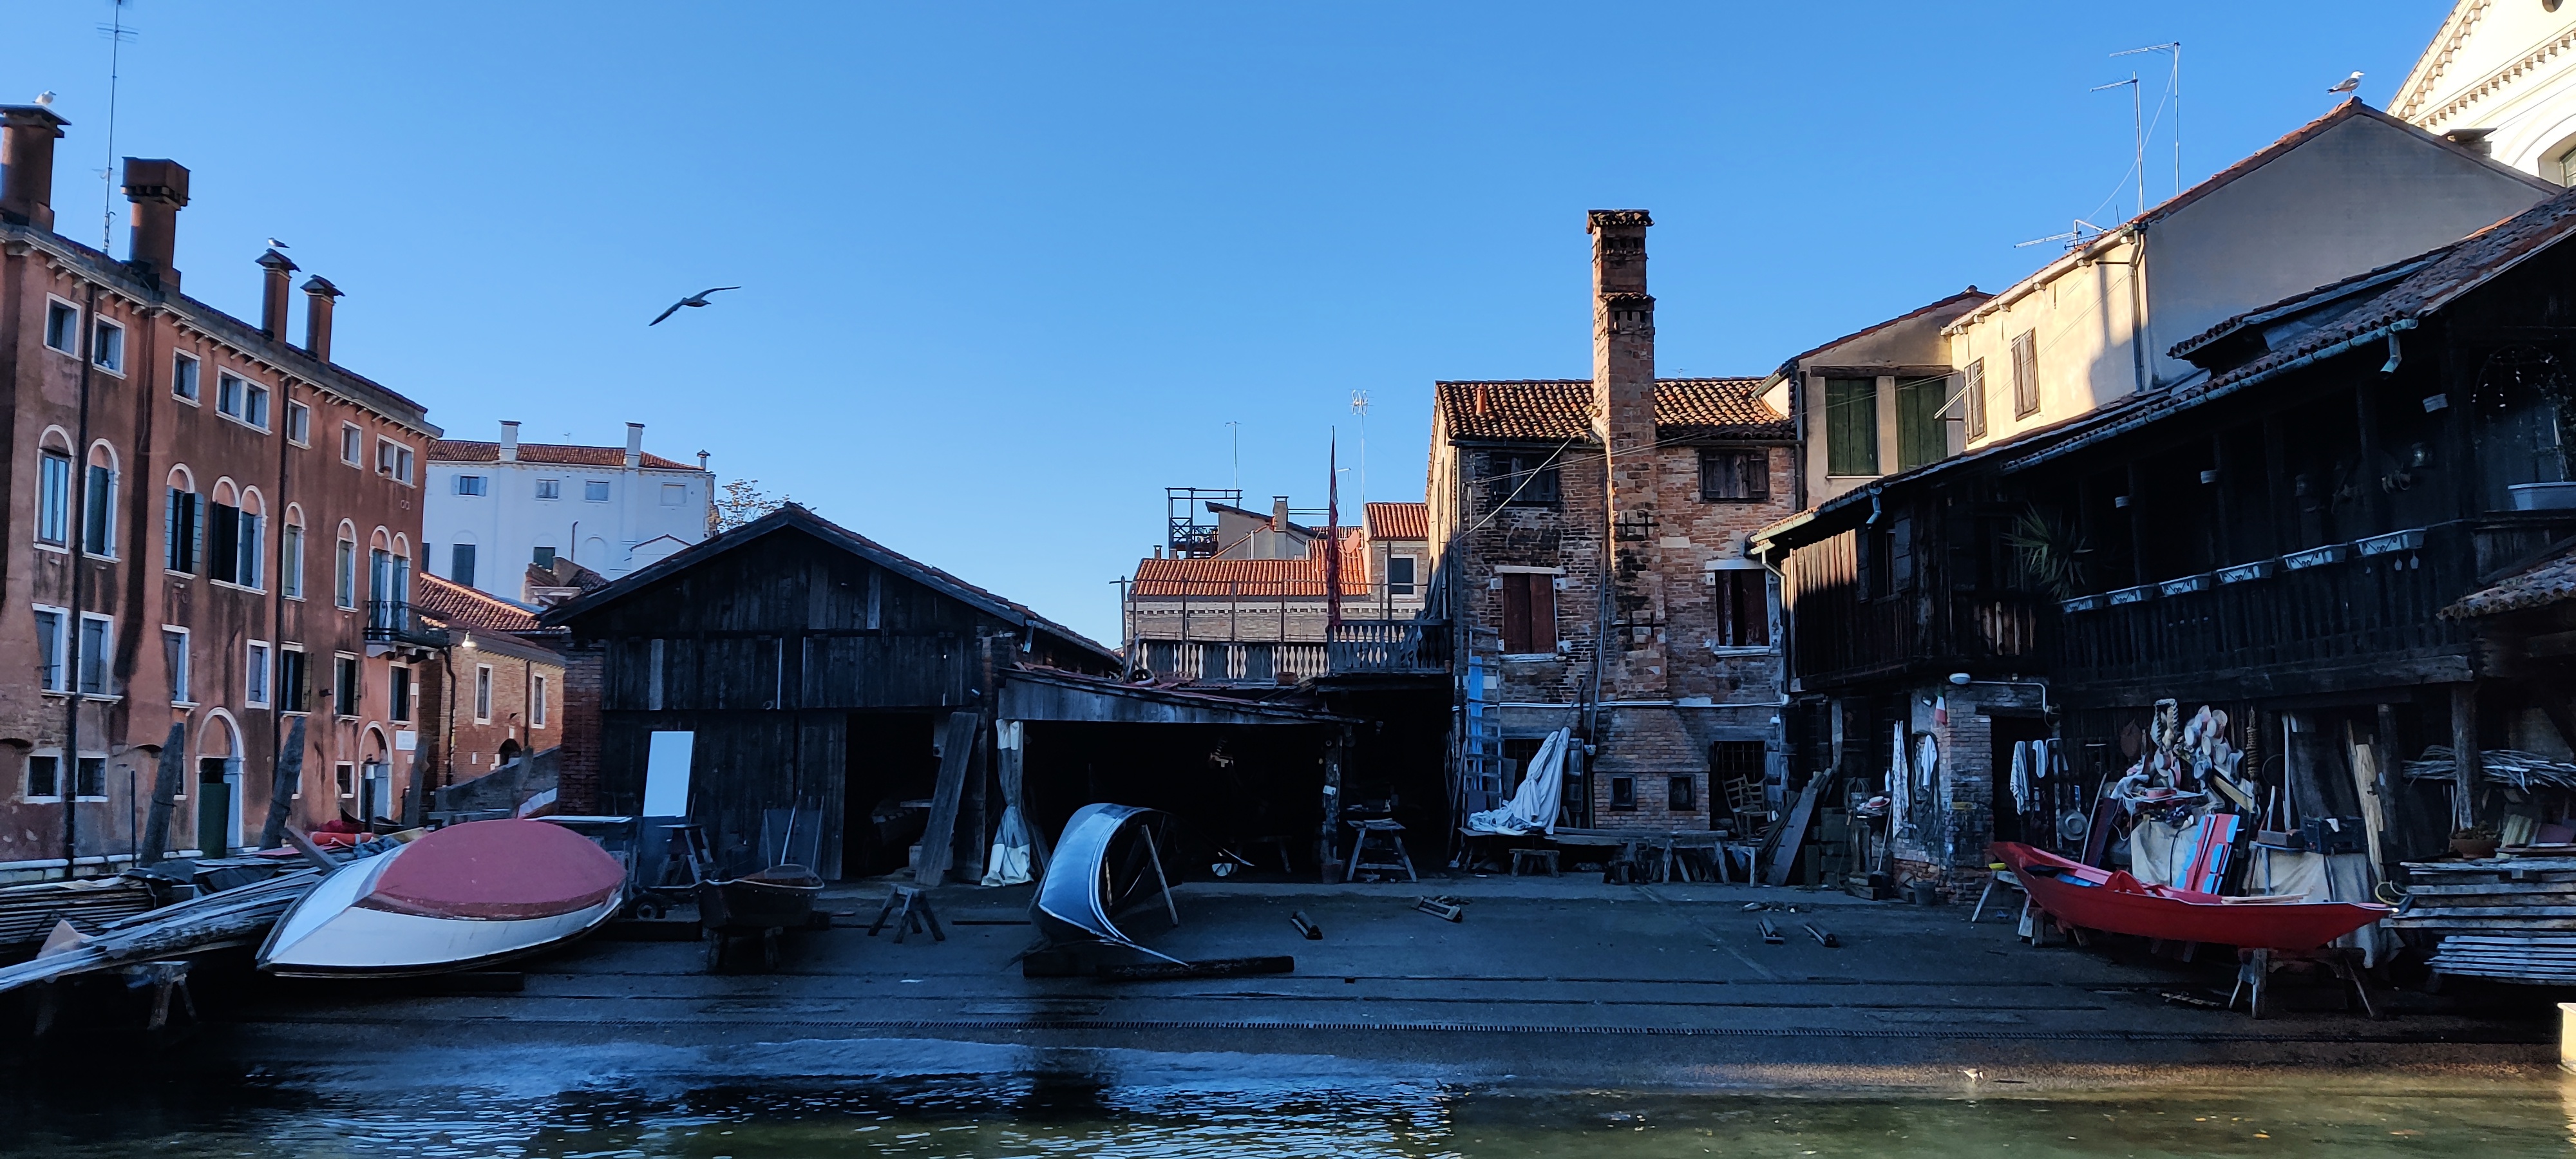 Squero di San Trovaso, antiguo astillero donde se construyen Gondolas - Venecia en 3 días